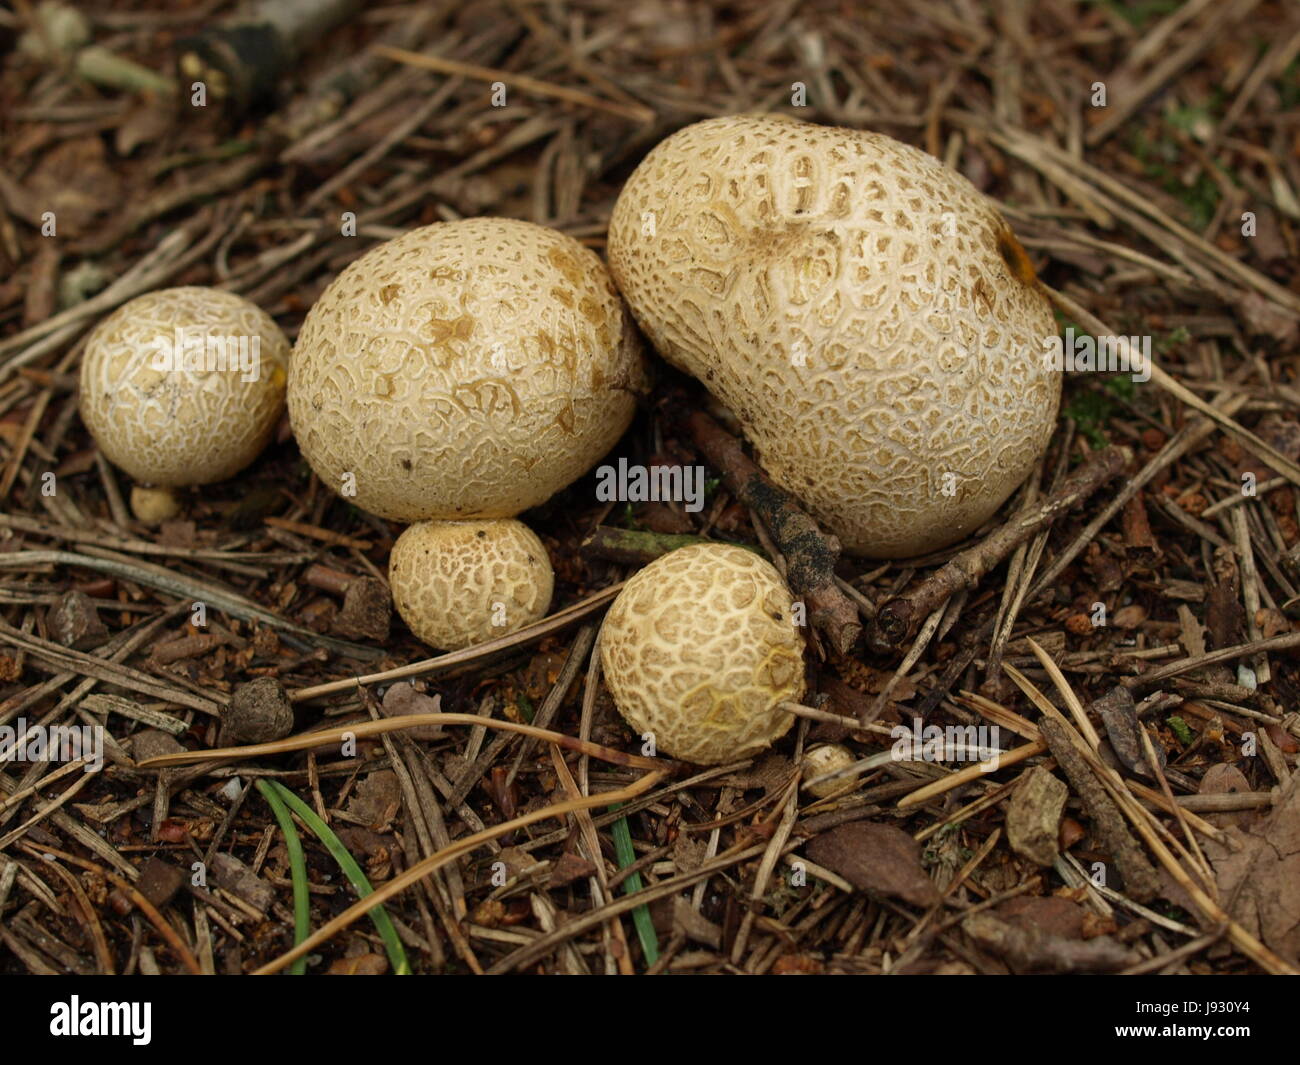 mushrooms, mushrooms, mushroom, fungus, bovist, heidebovist, basidienpilze, Stock Photo